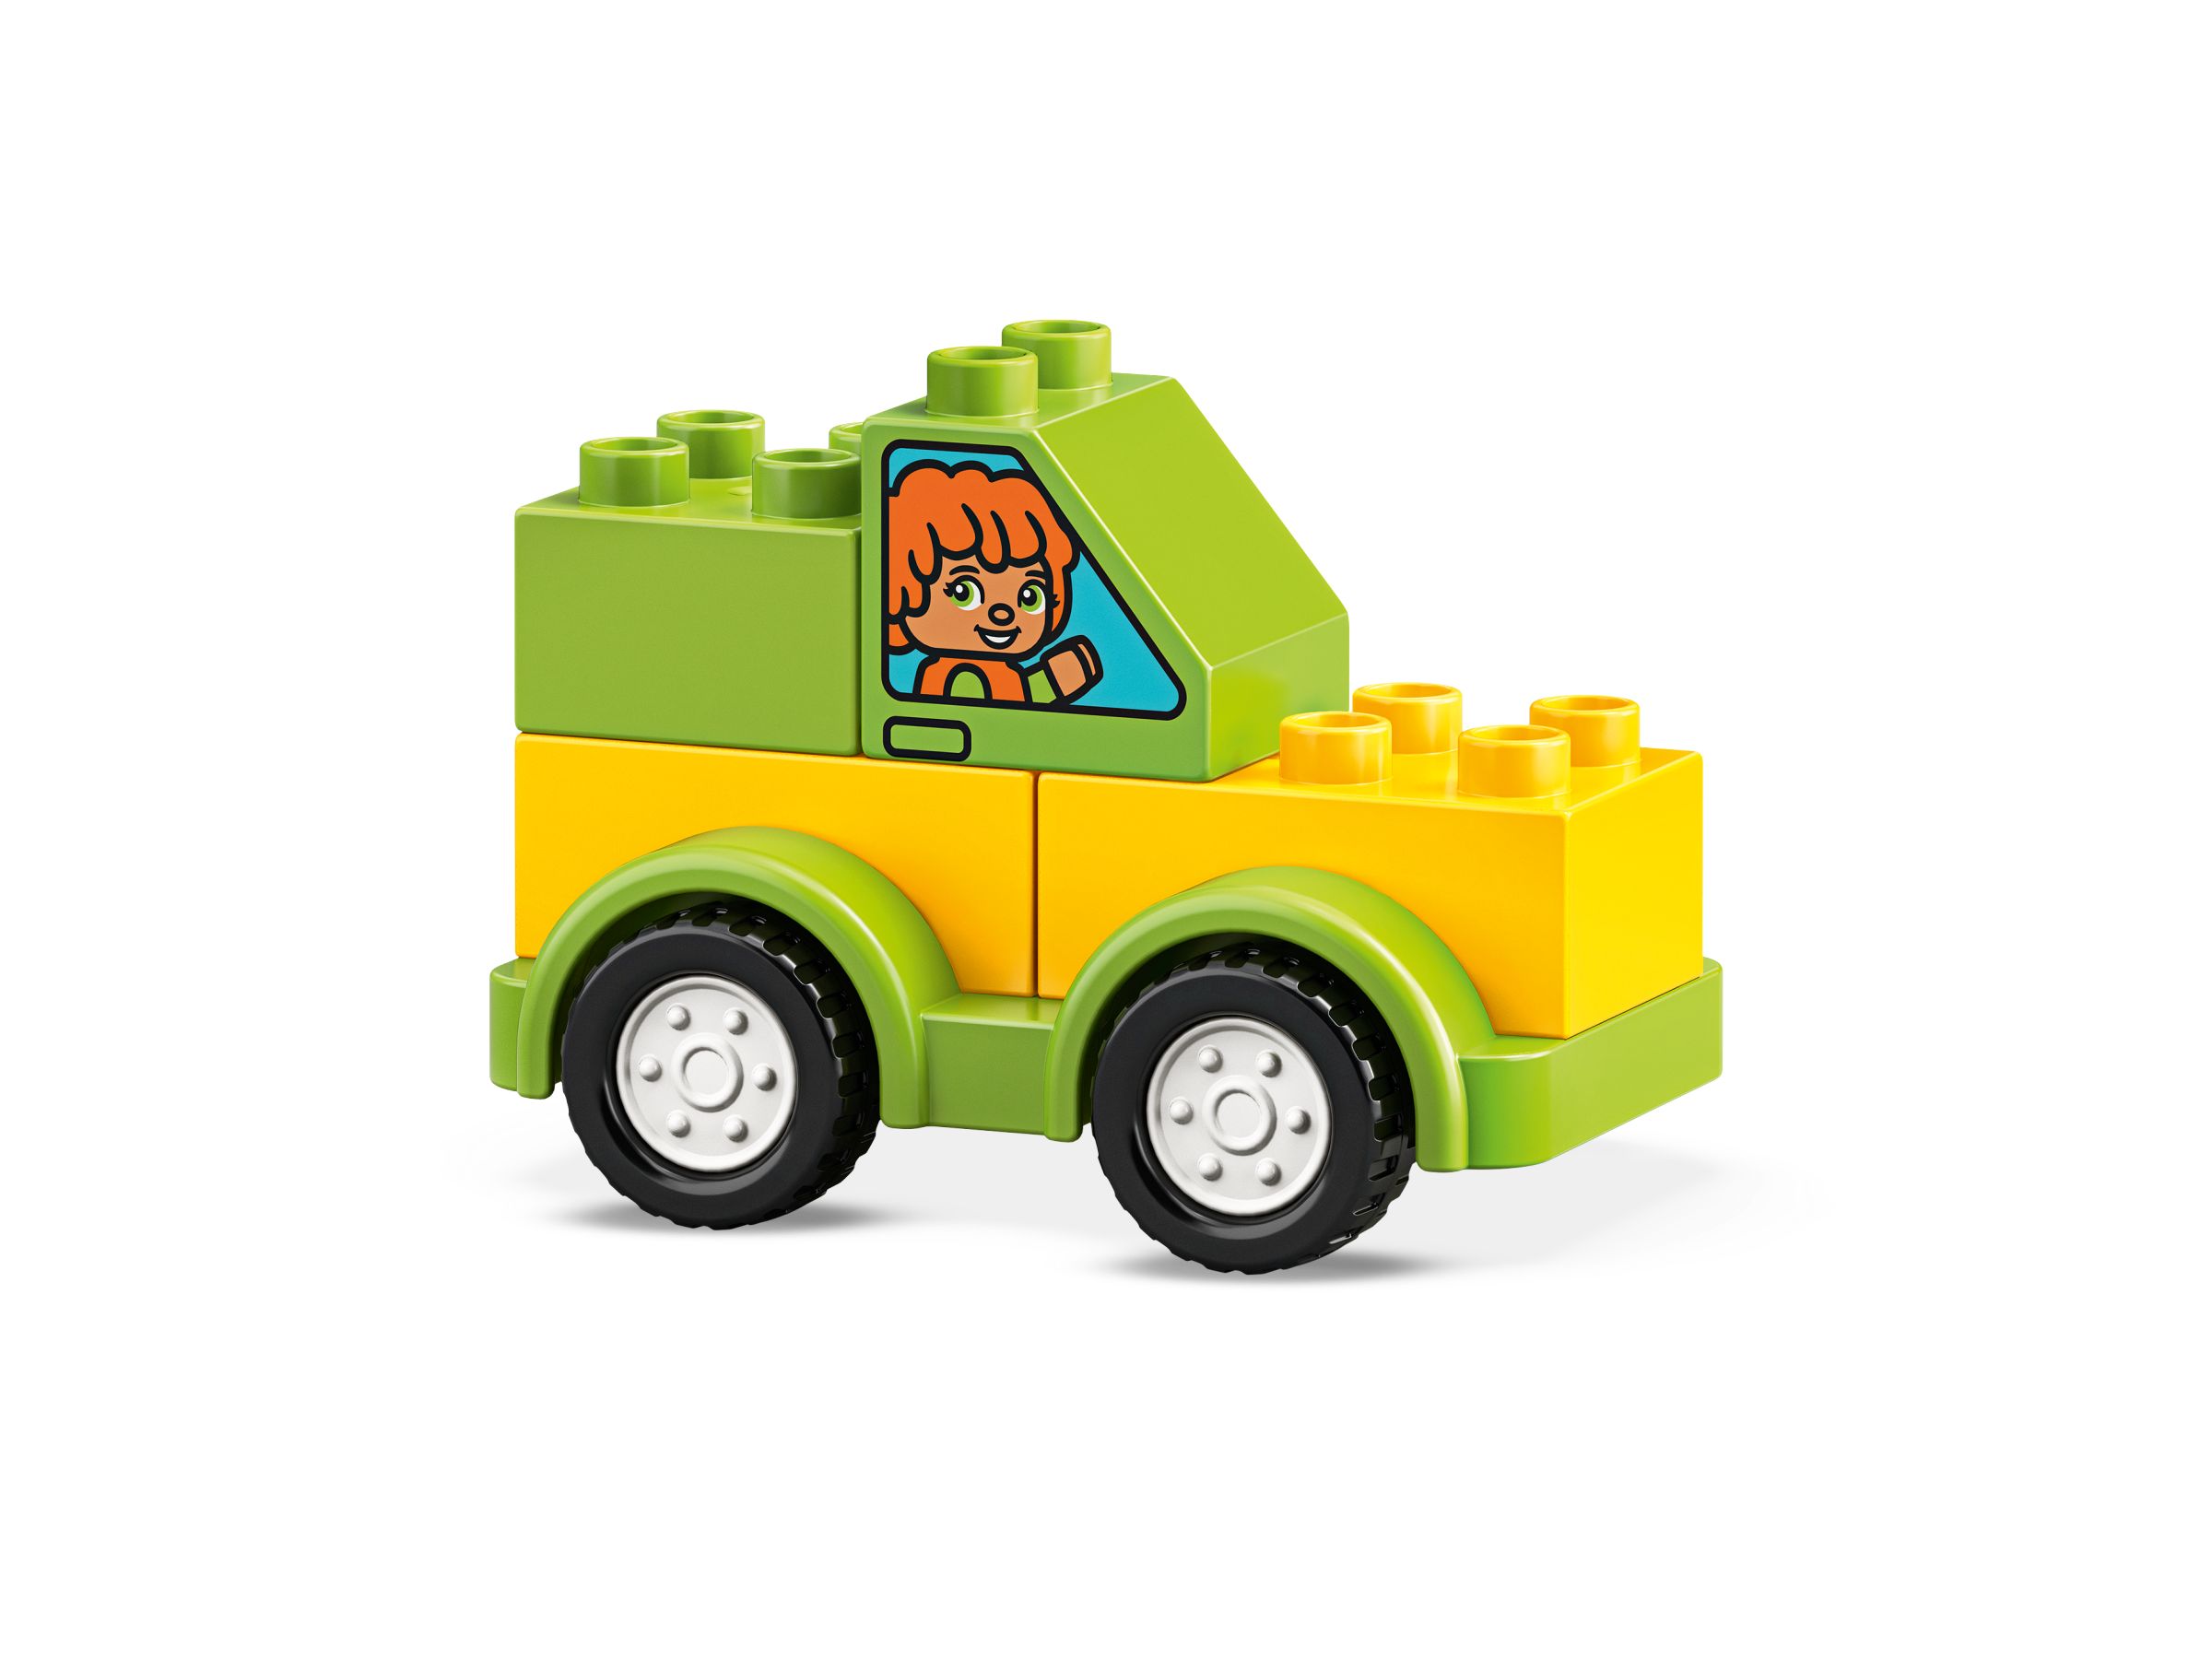 LEGO Duplo 10886 Meine ersten Fahrzeuge LEGO_10886_alt3.jpg